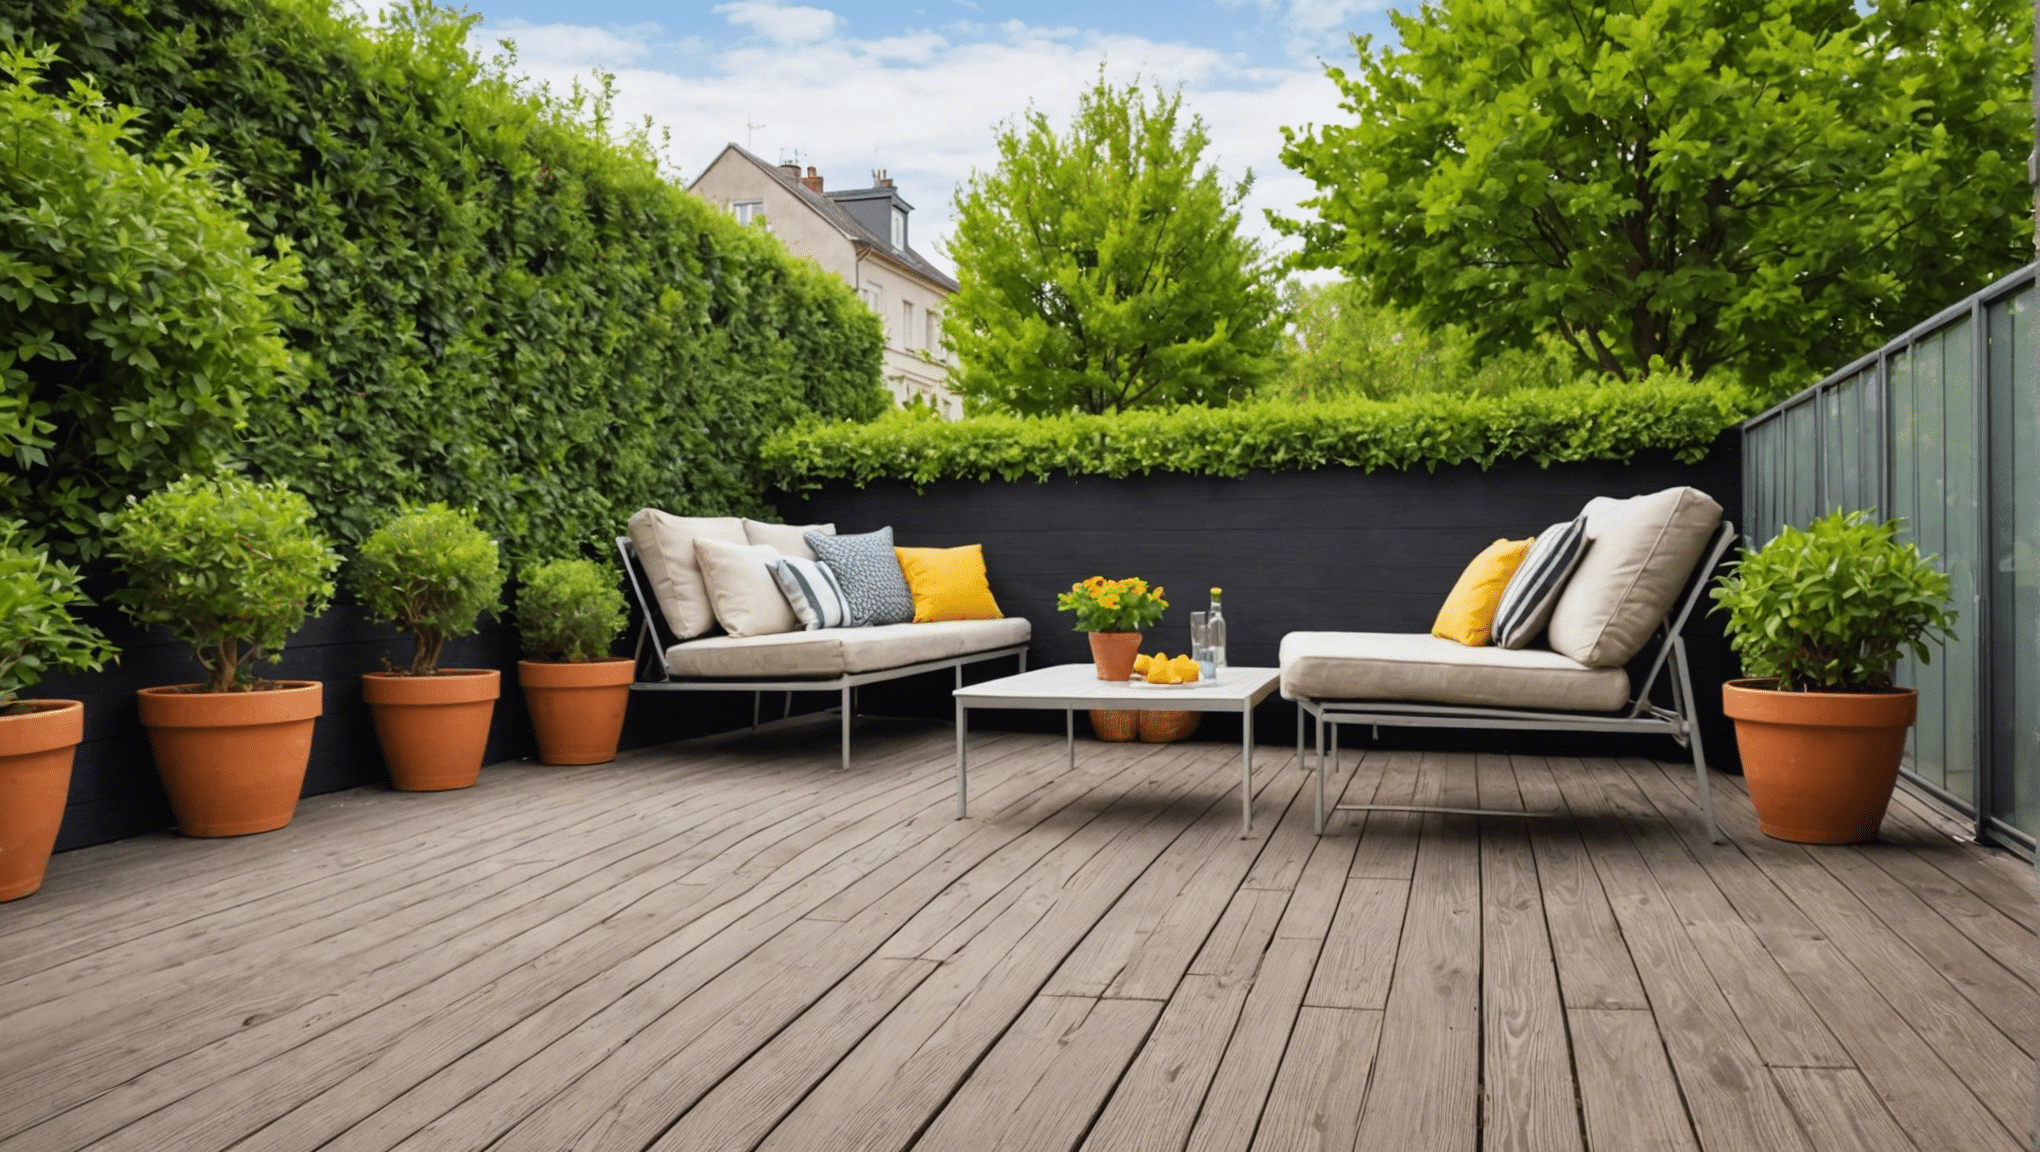 découvrez comment nettoyer efficacement votre terrasse avec 4 solutions naturelles anti-mousse pour préserver sa propreté de manière écologique.